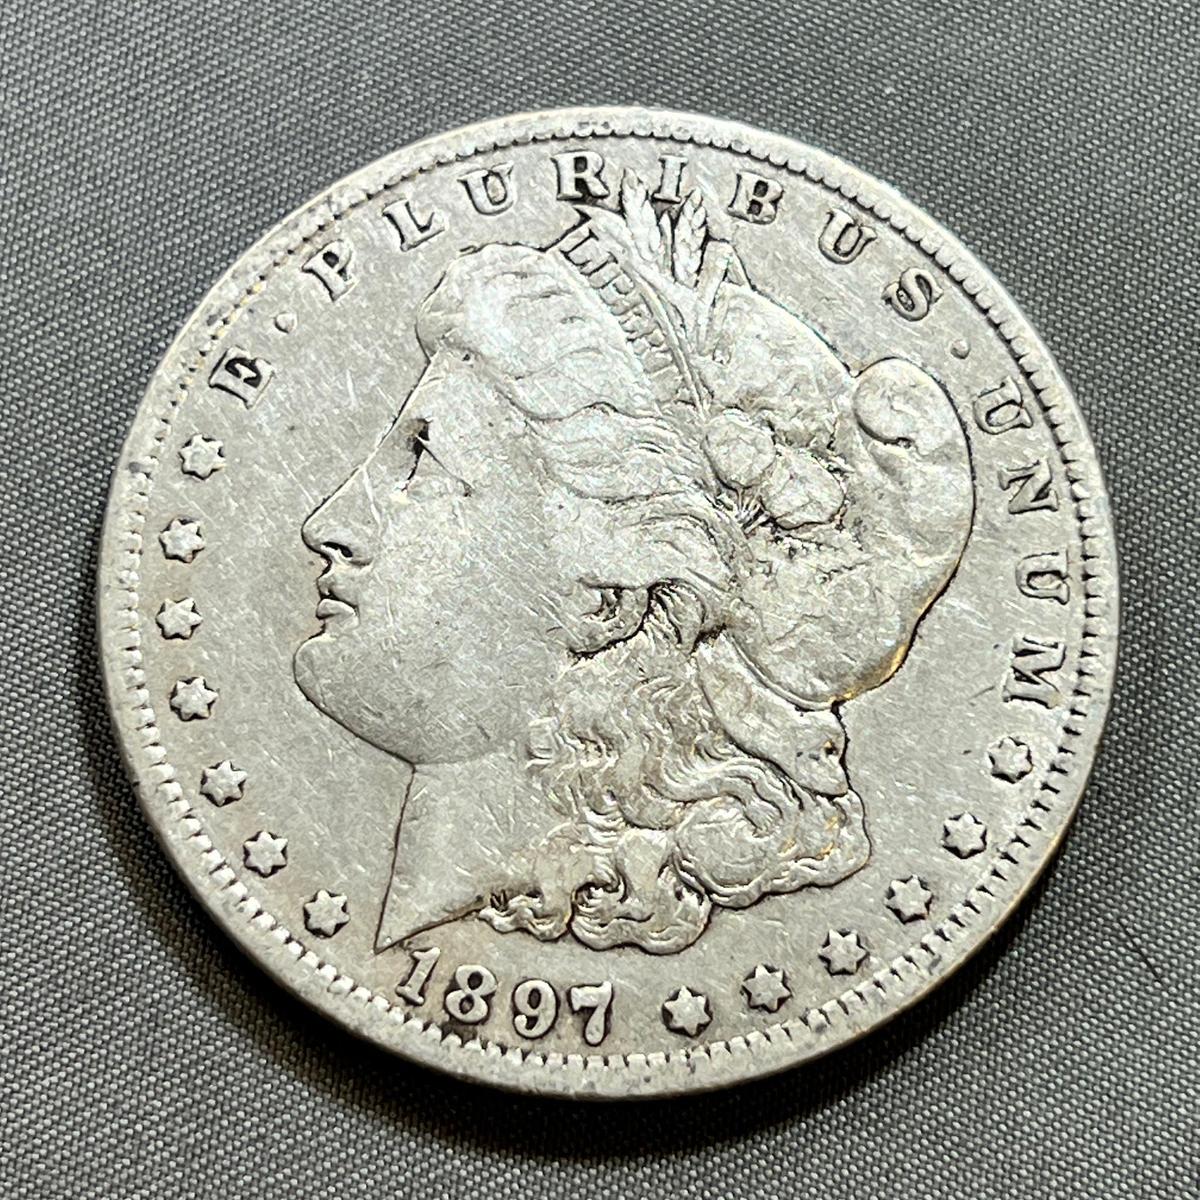 1897-O Morgan Silver Dollar, 90% silver